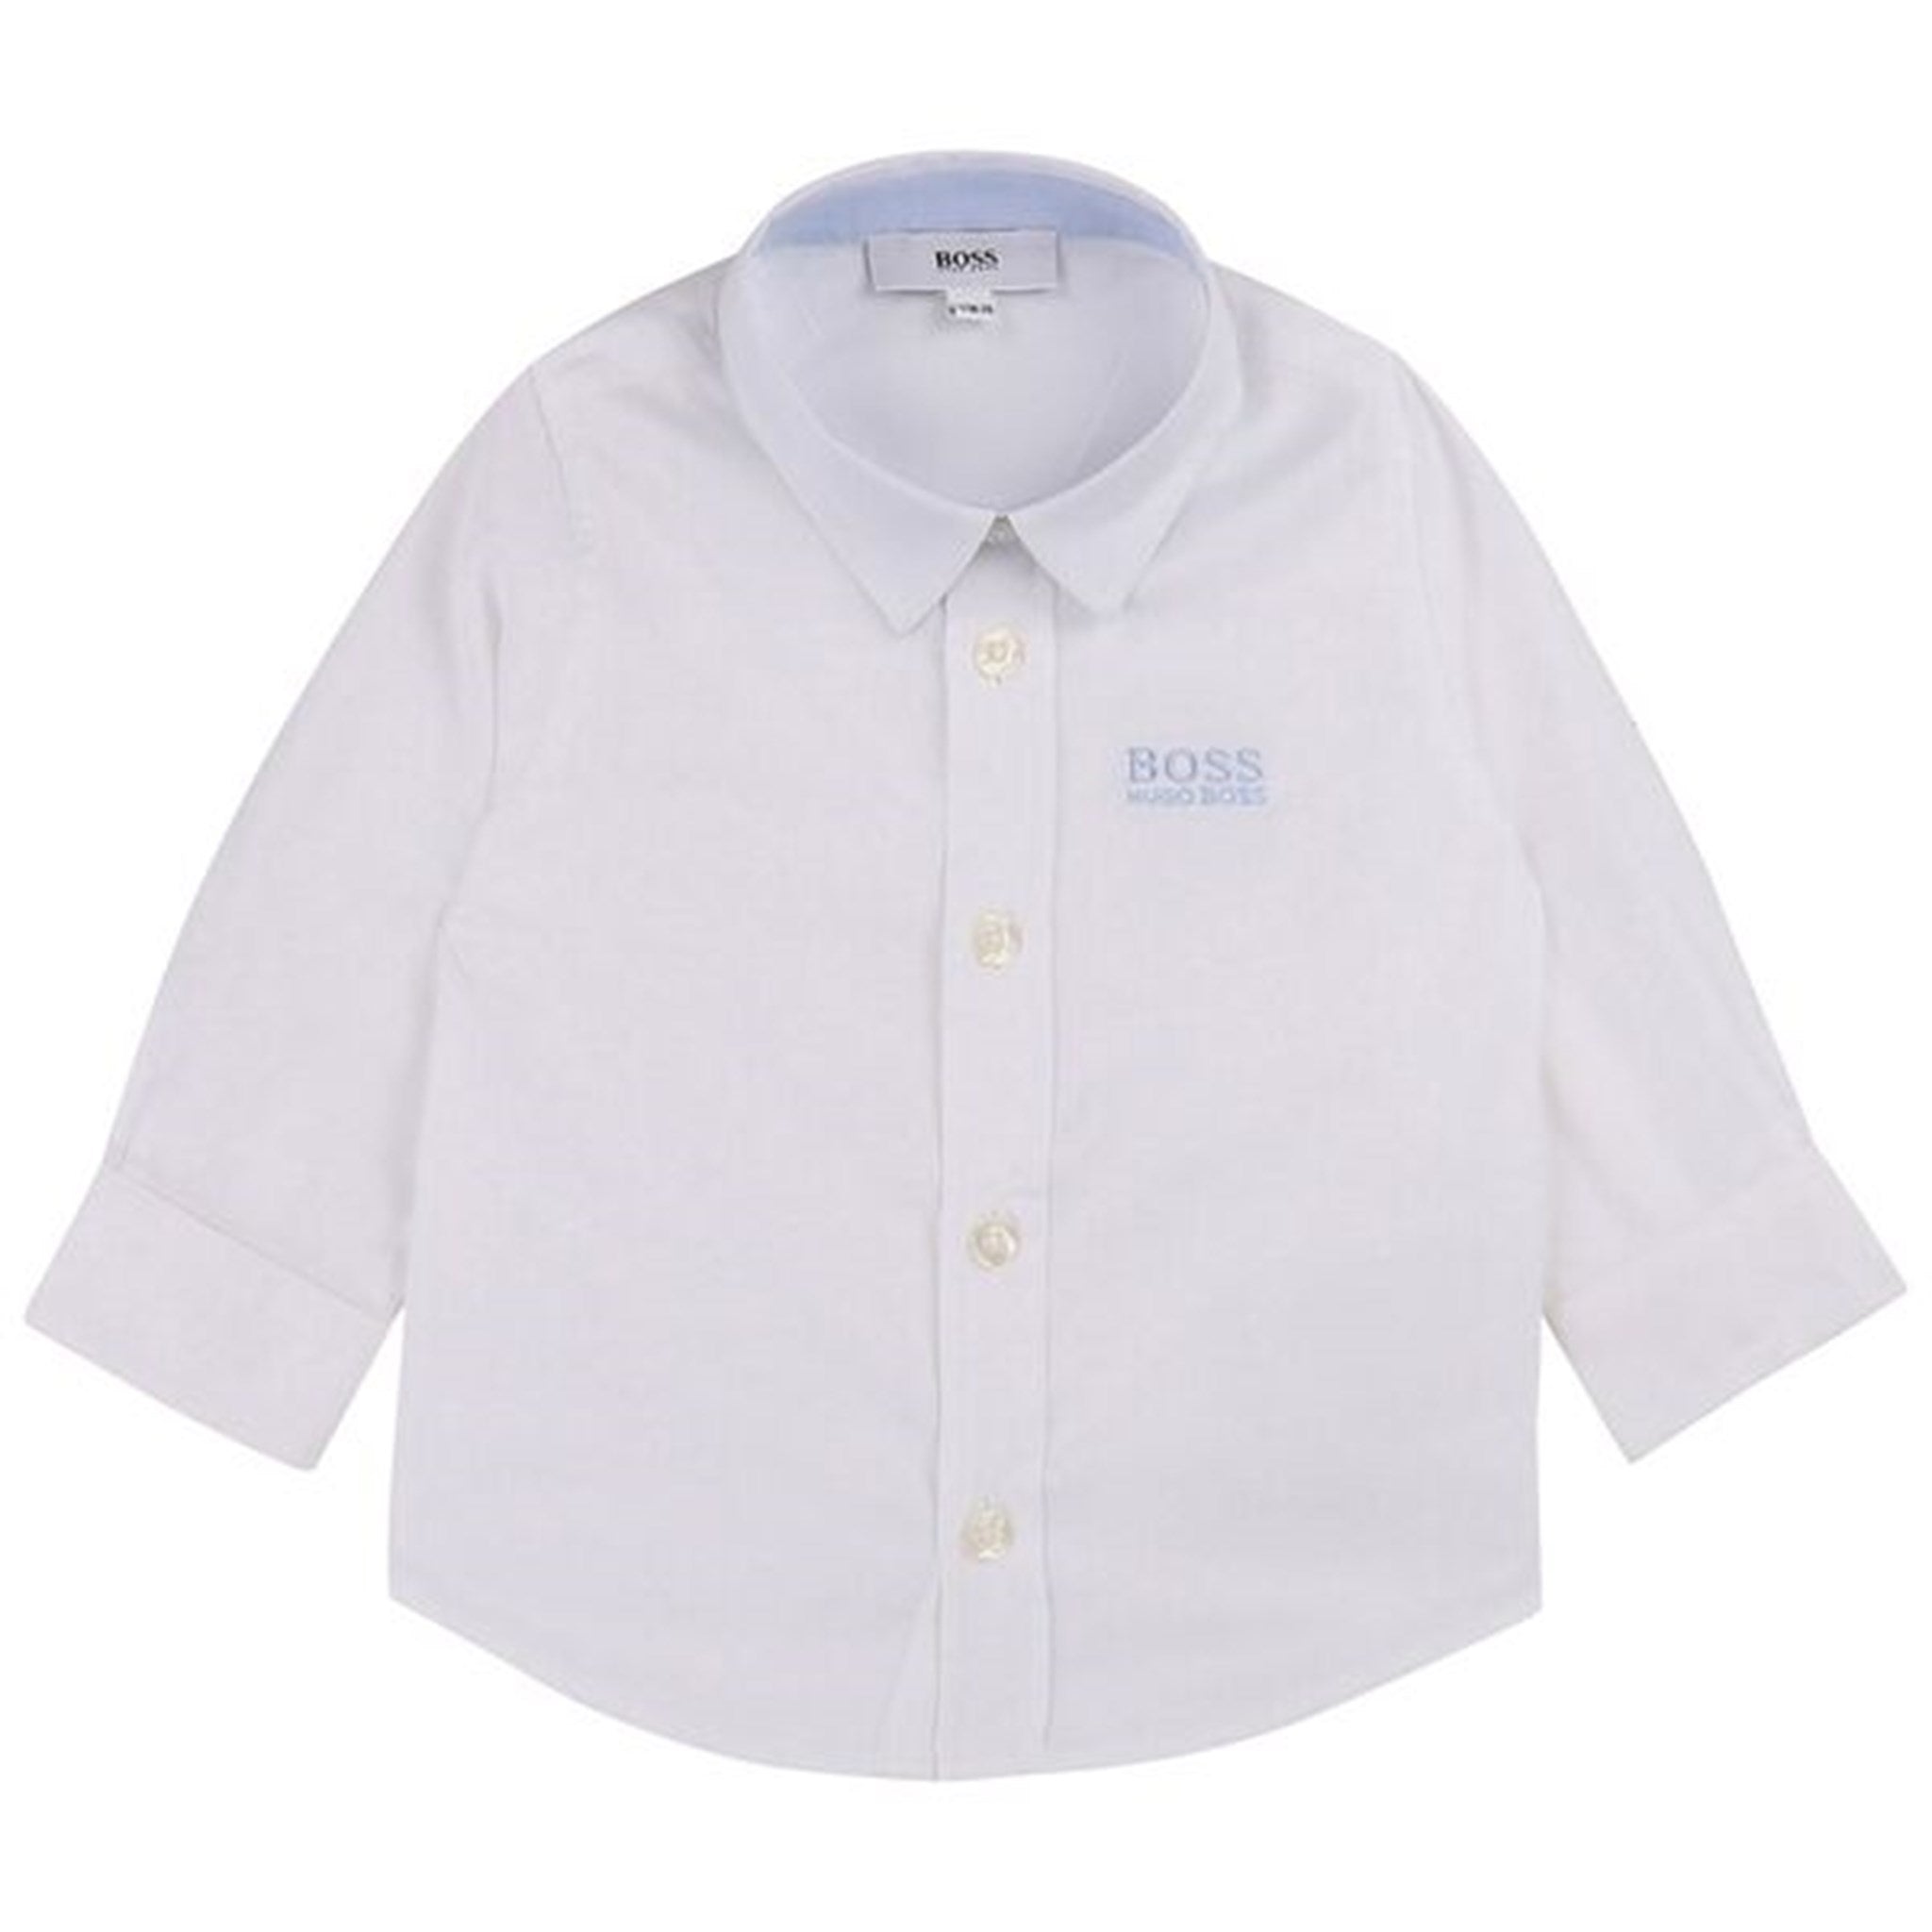 Hugo Boss Baby Long Sleeved Shirt White